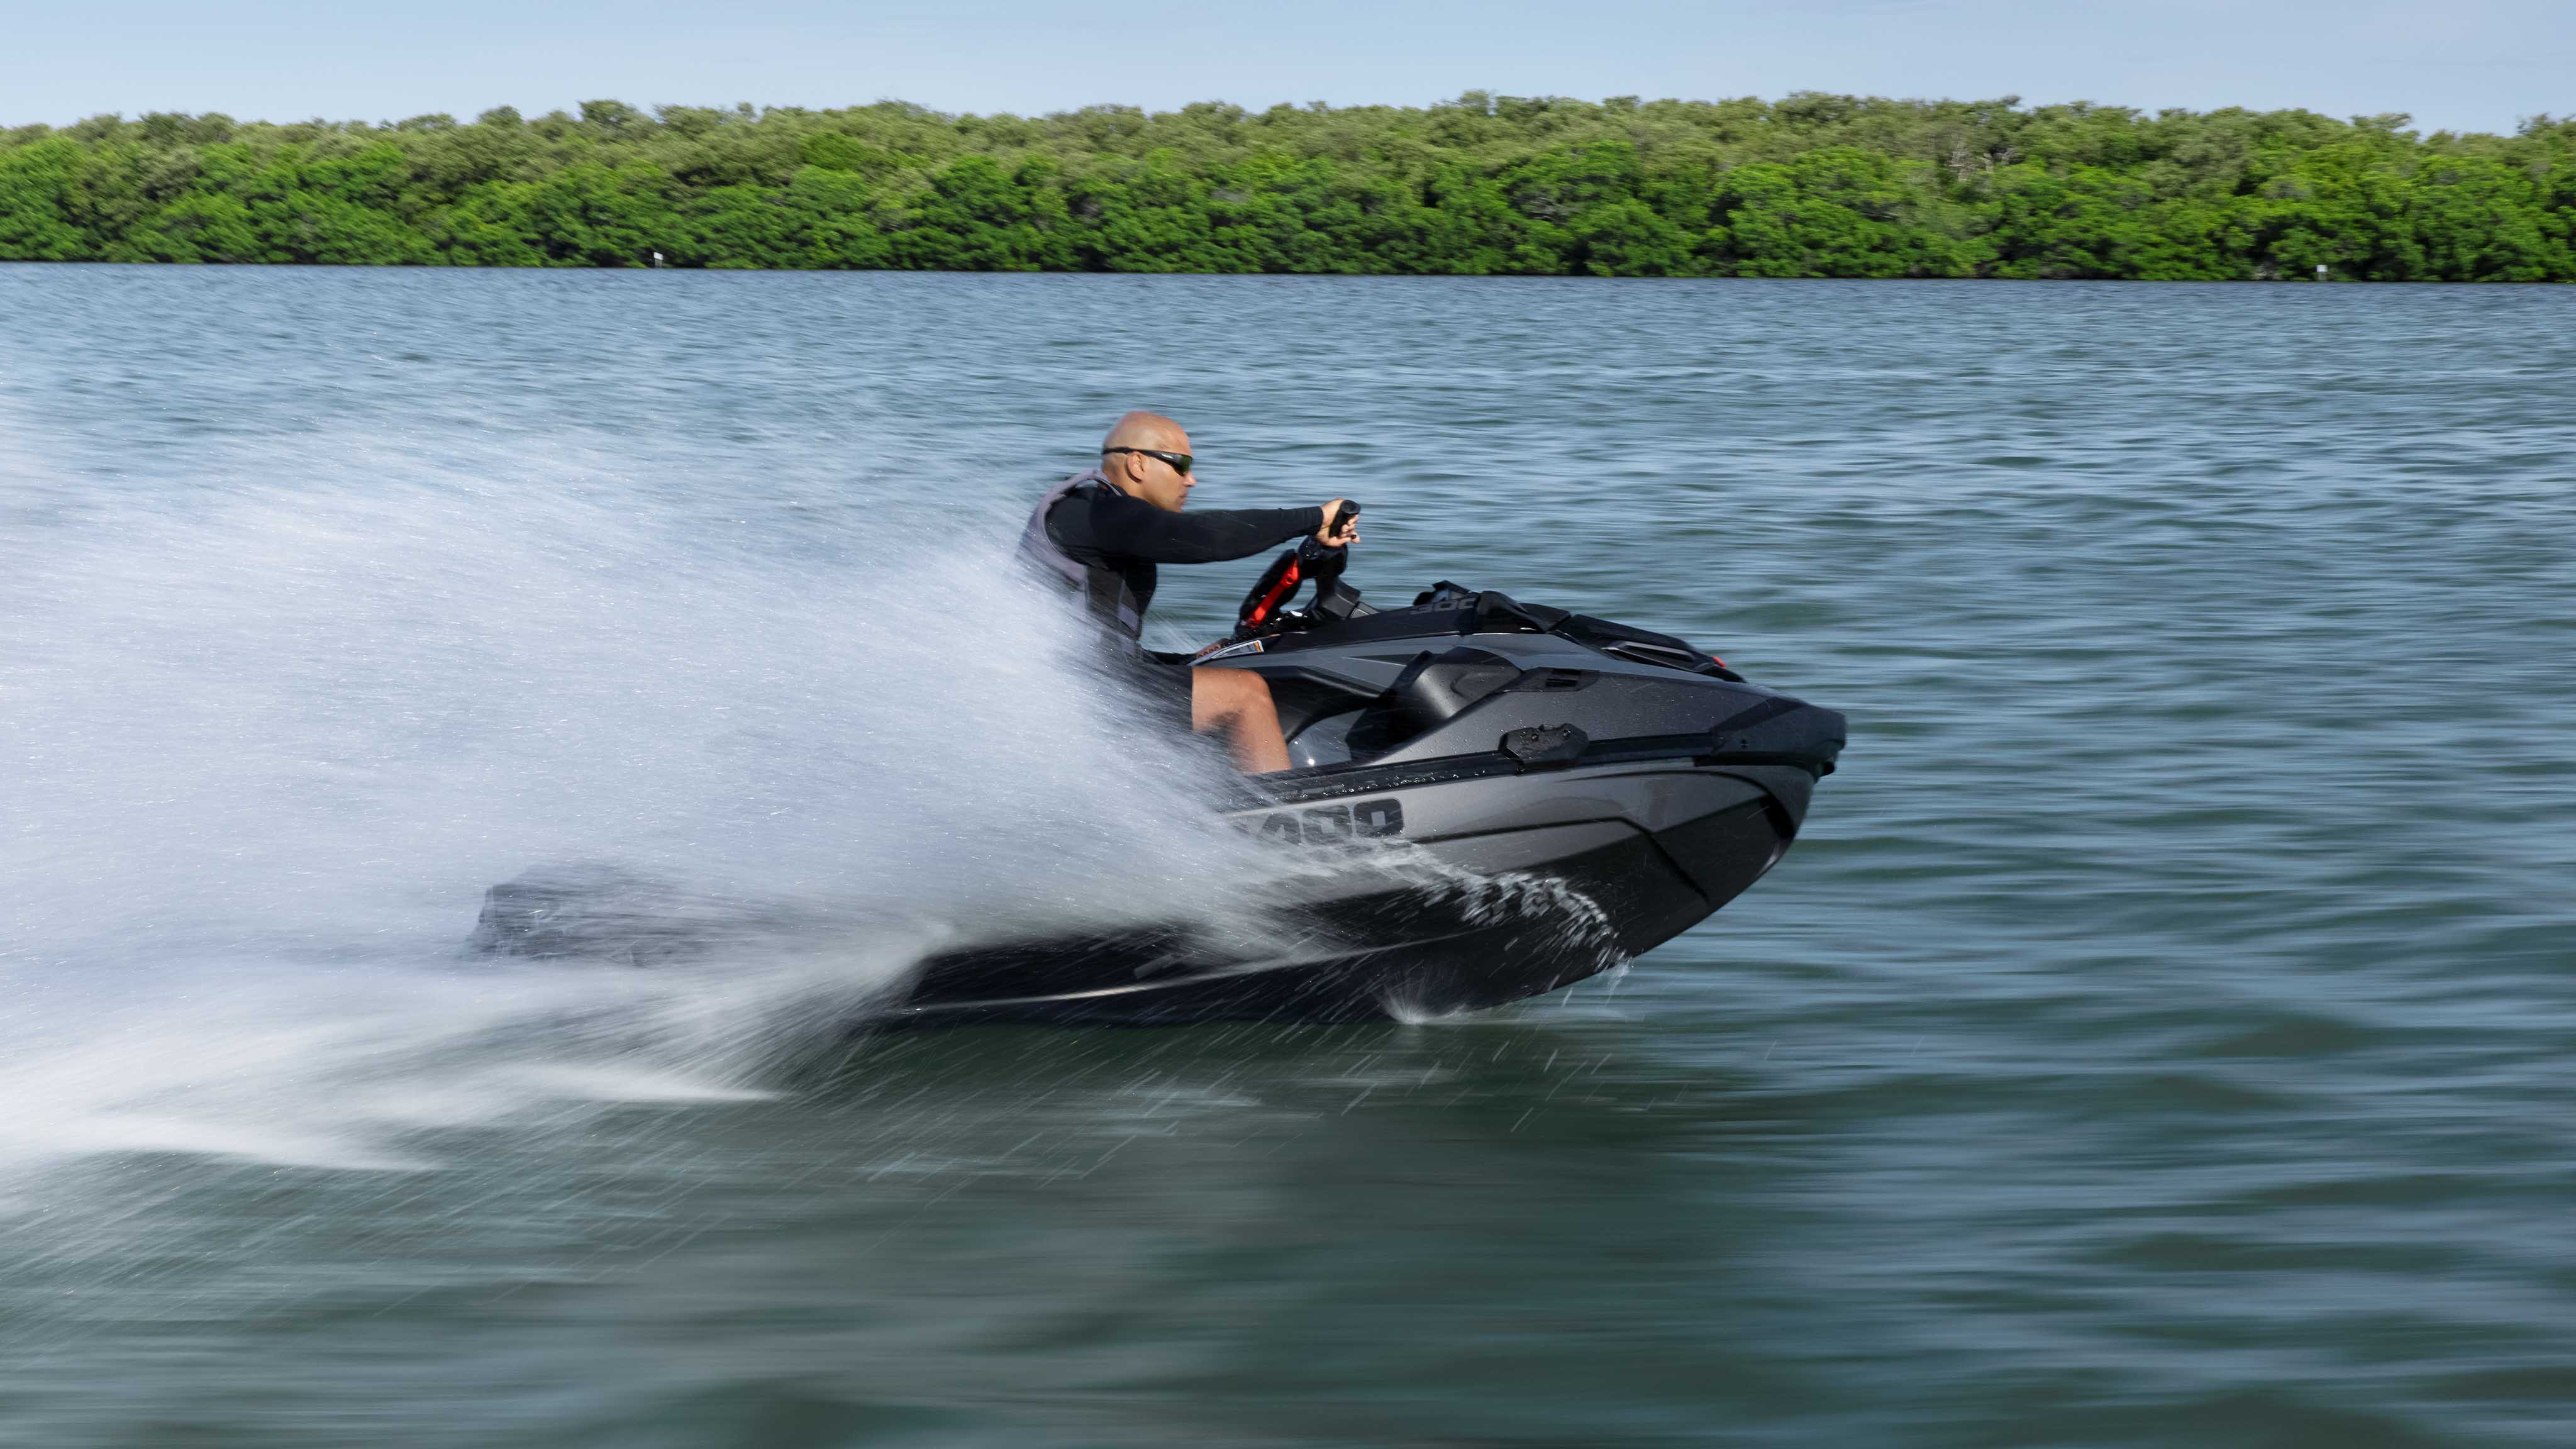 一个男子正快速驾驶 Sea-Doo RXT-X 摩托艇